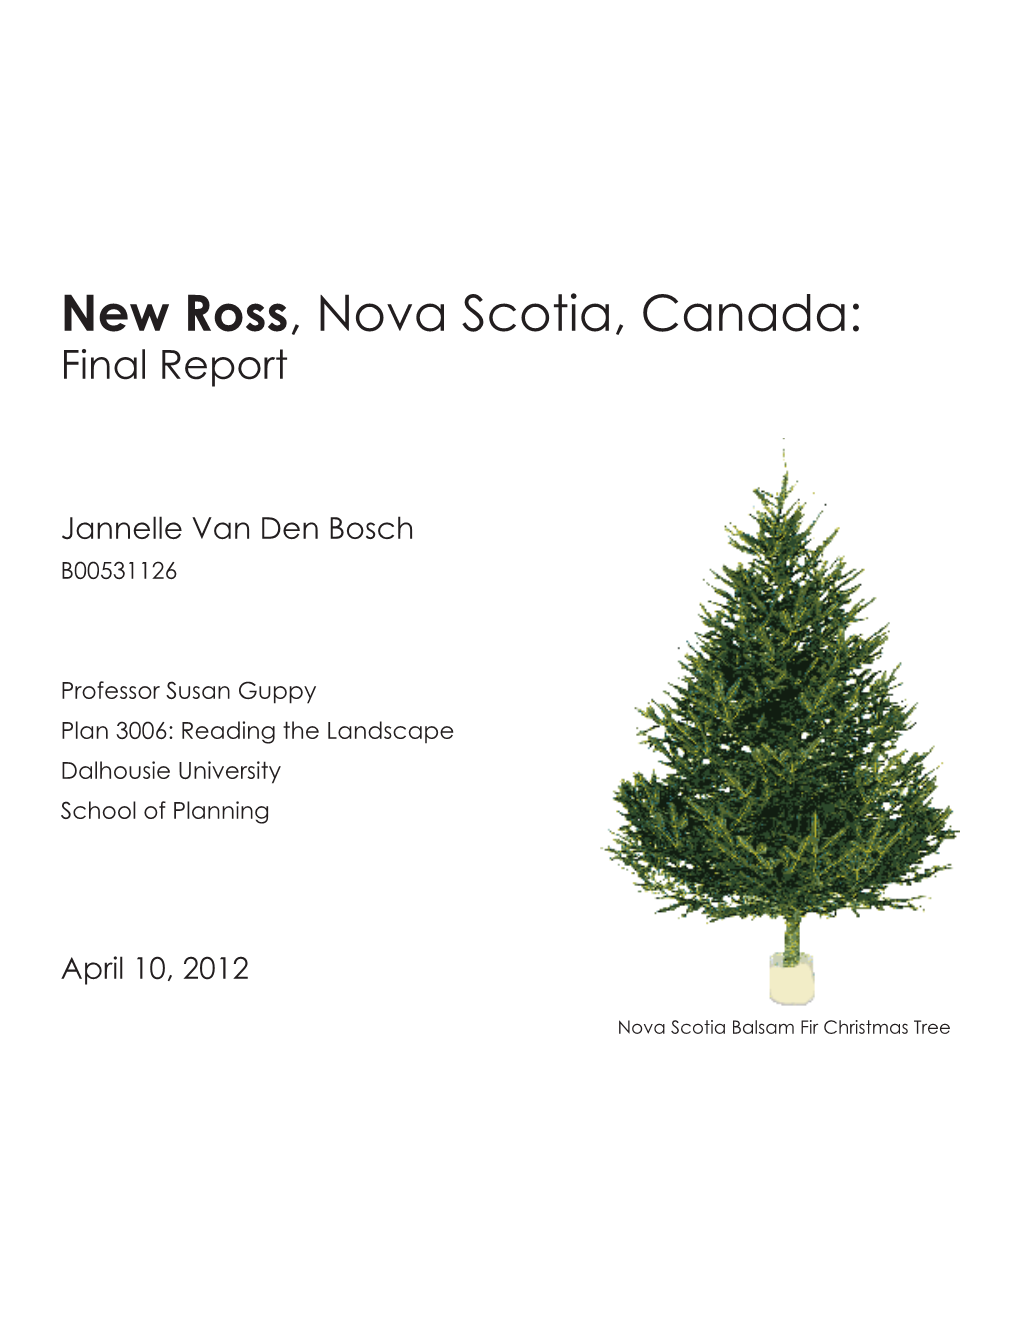 New Ross, Nova Scotia, Canada: Final Report